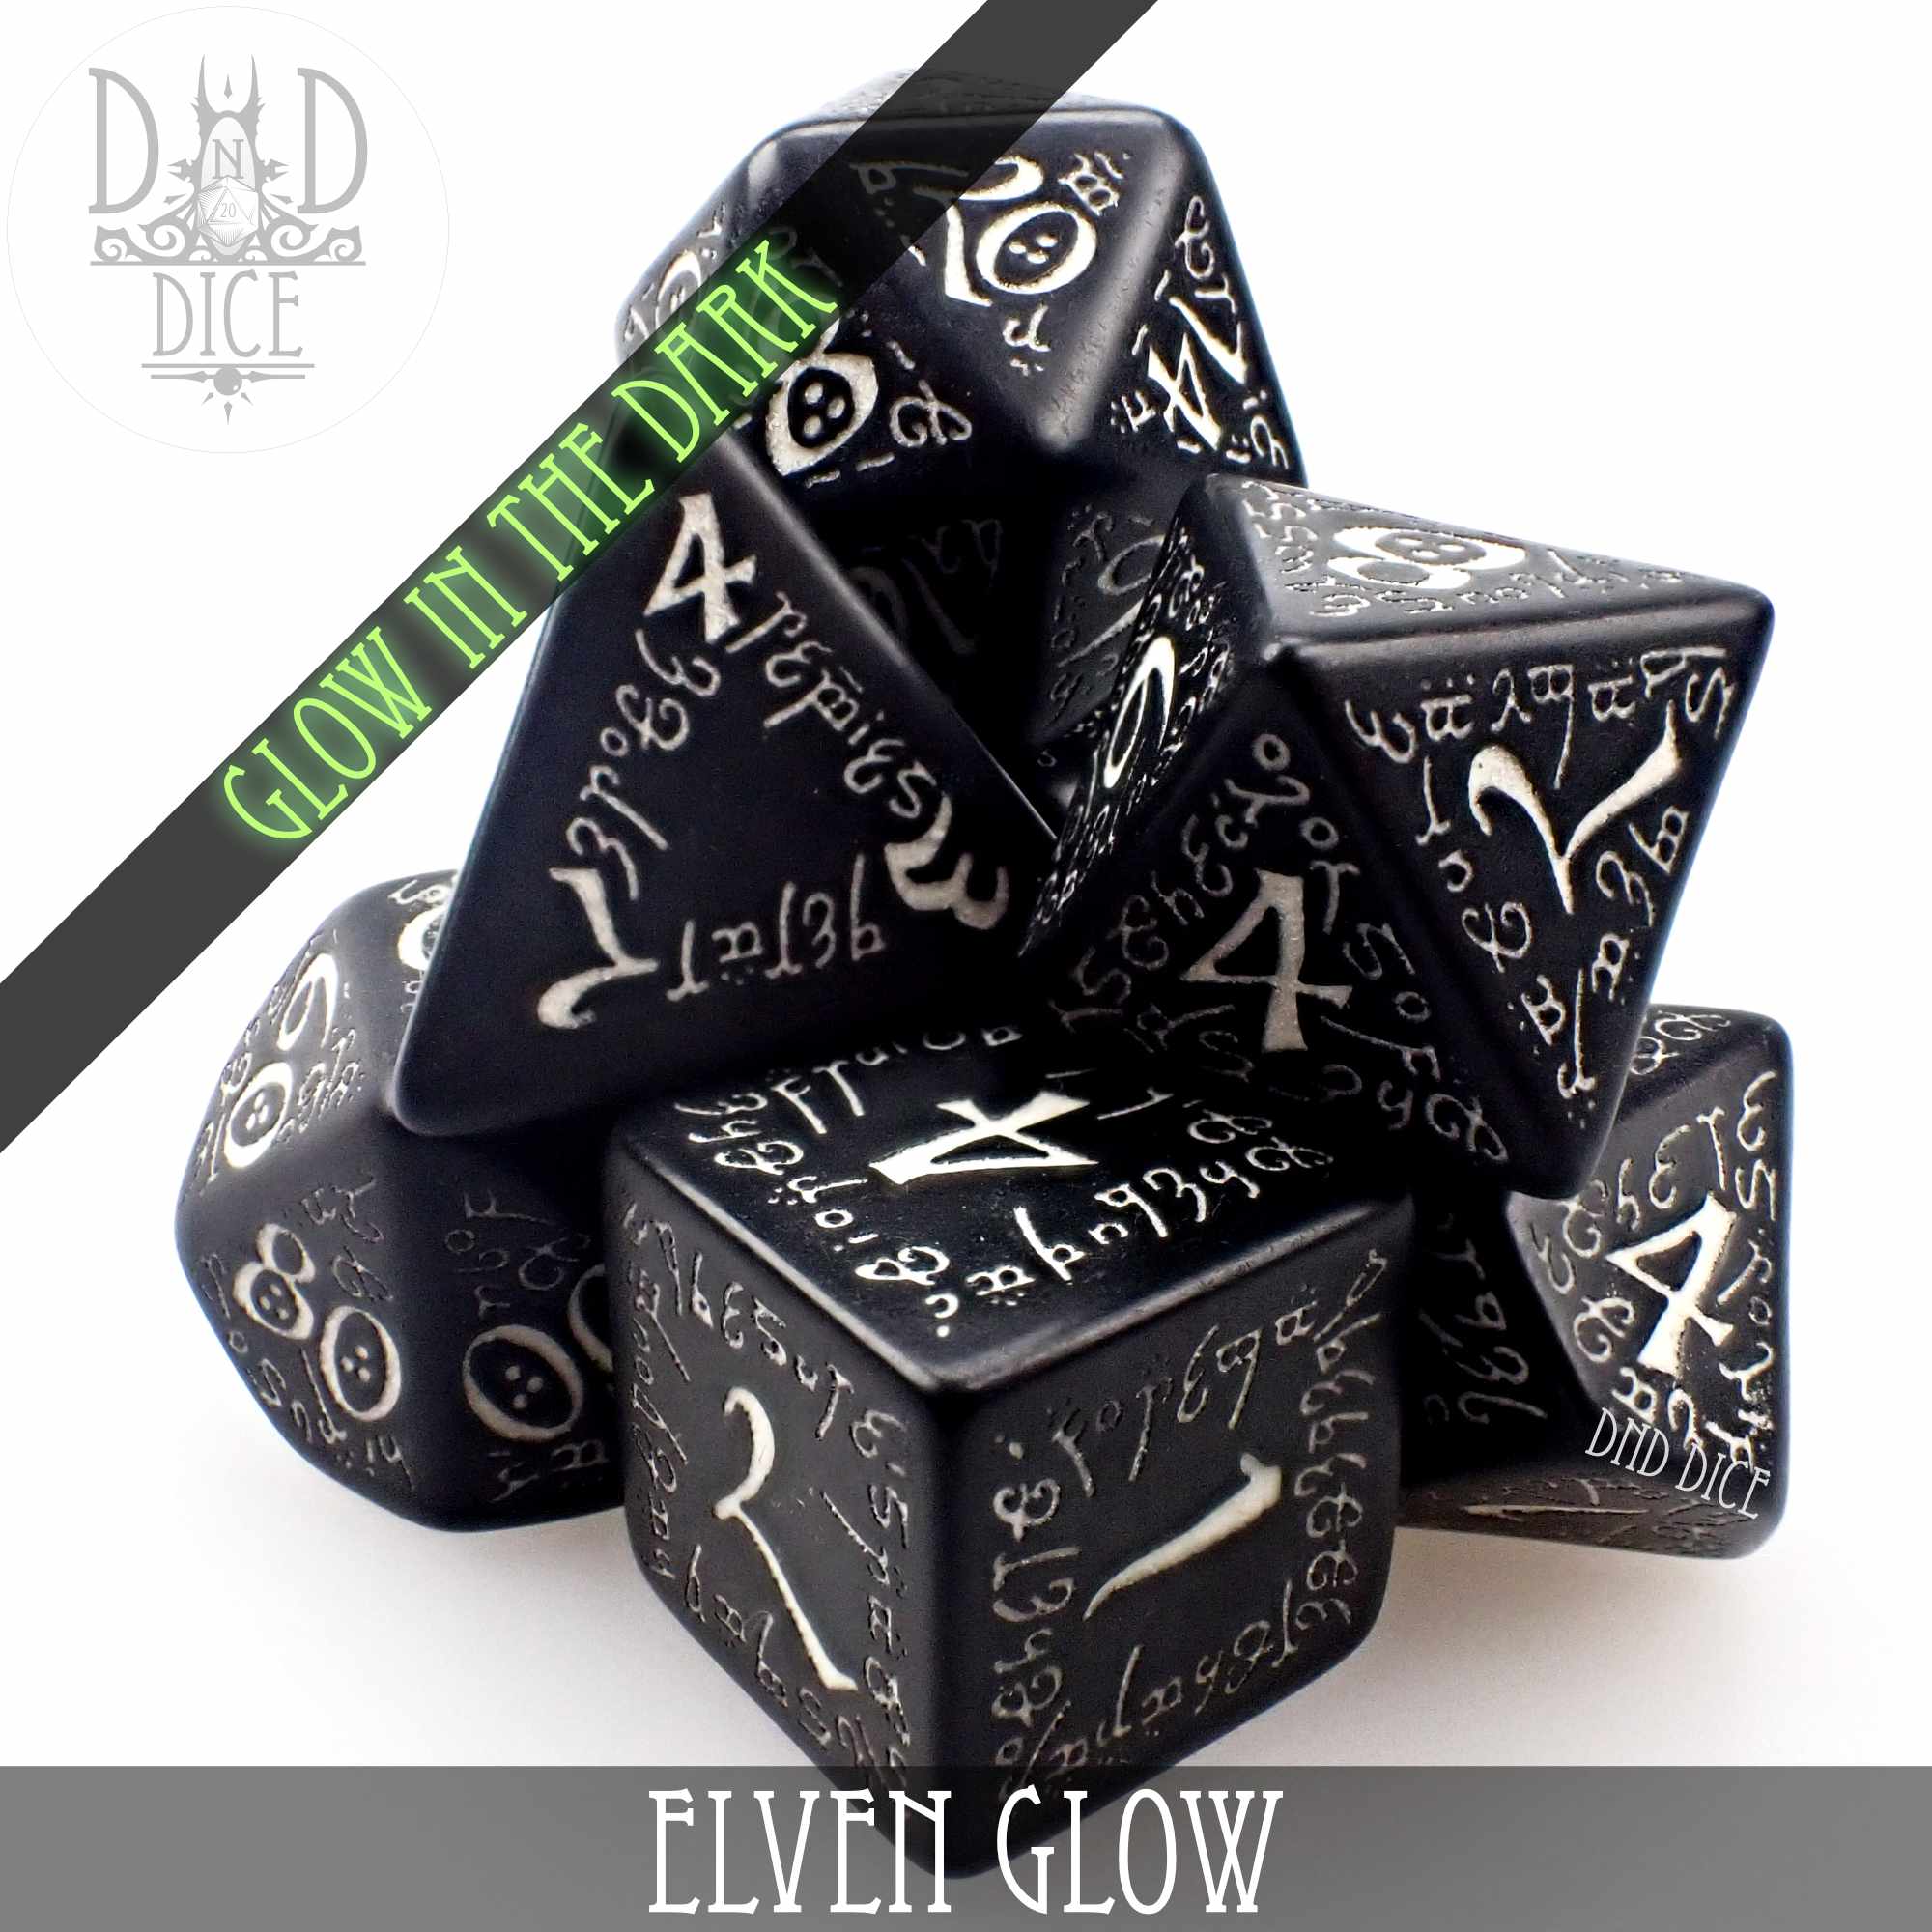 Elven Glow in the Dark Dice Set